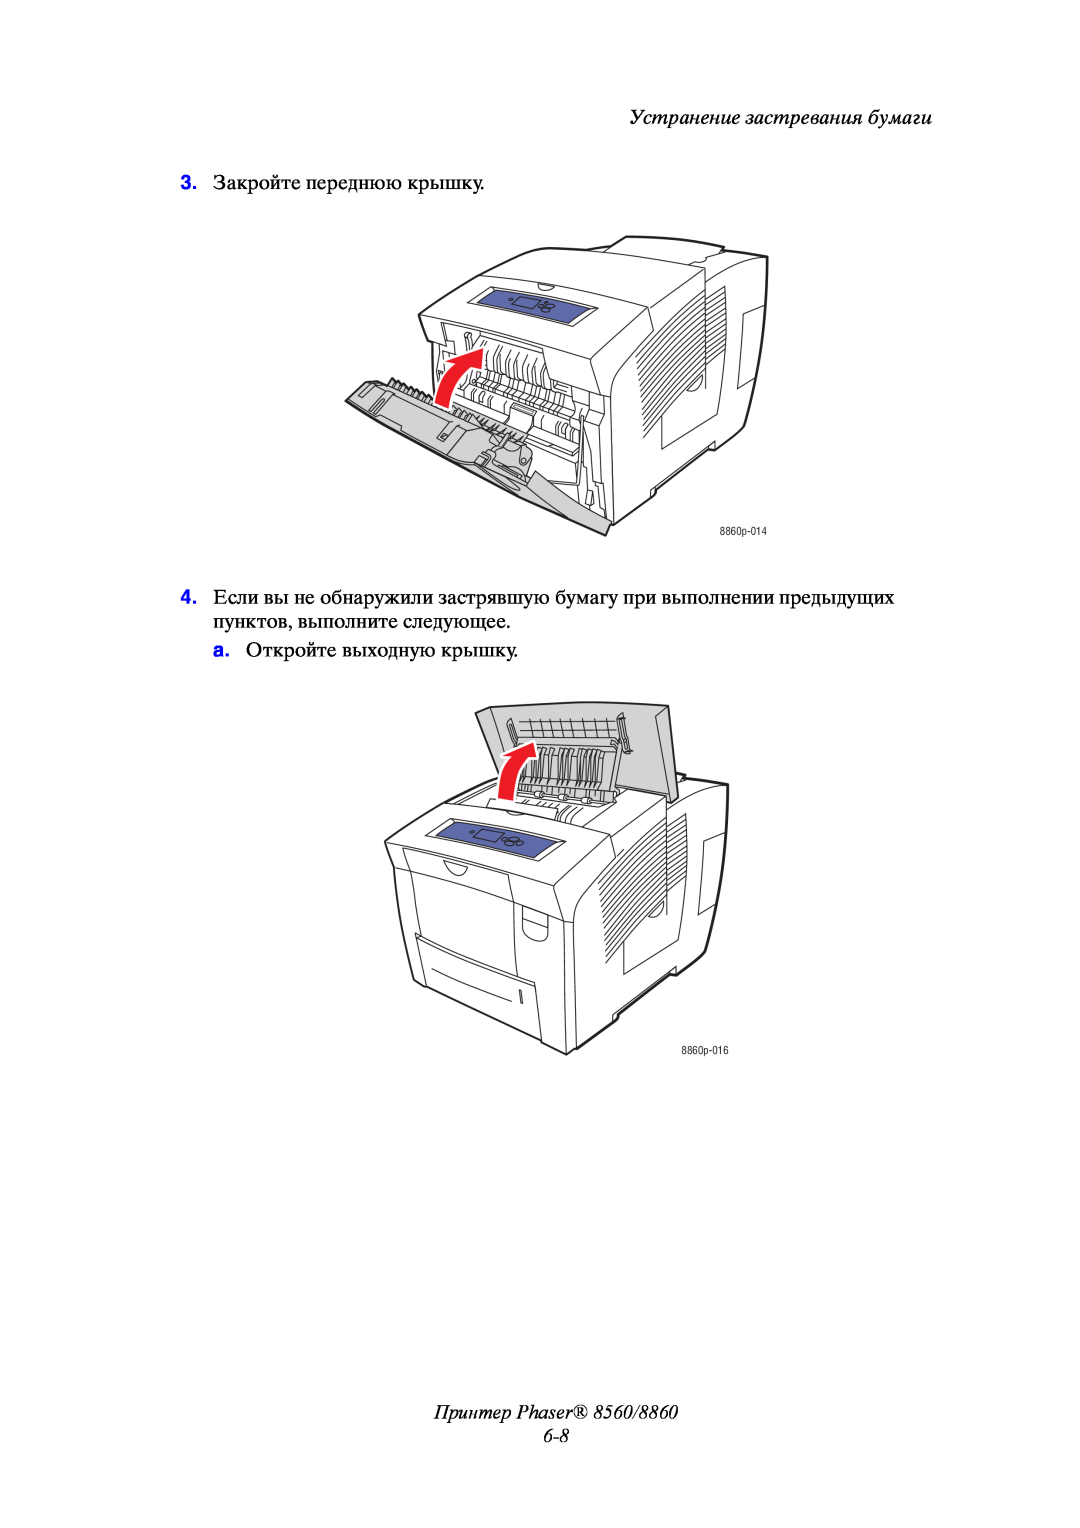 Xerox Принтер Phaser 8560/8860 6-8, Устранение застревания бумаги, 3. Закройте переднюю крышку, 8860p-014, 8860p-016 